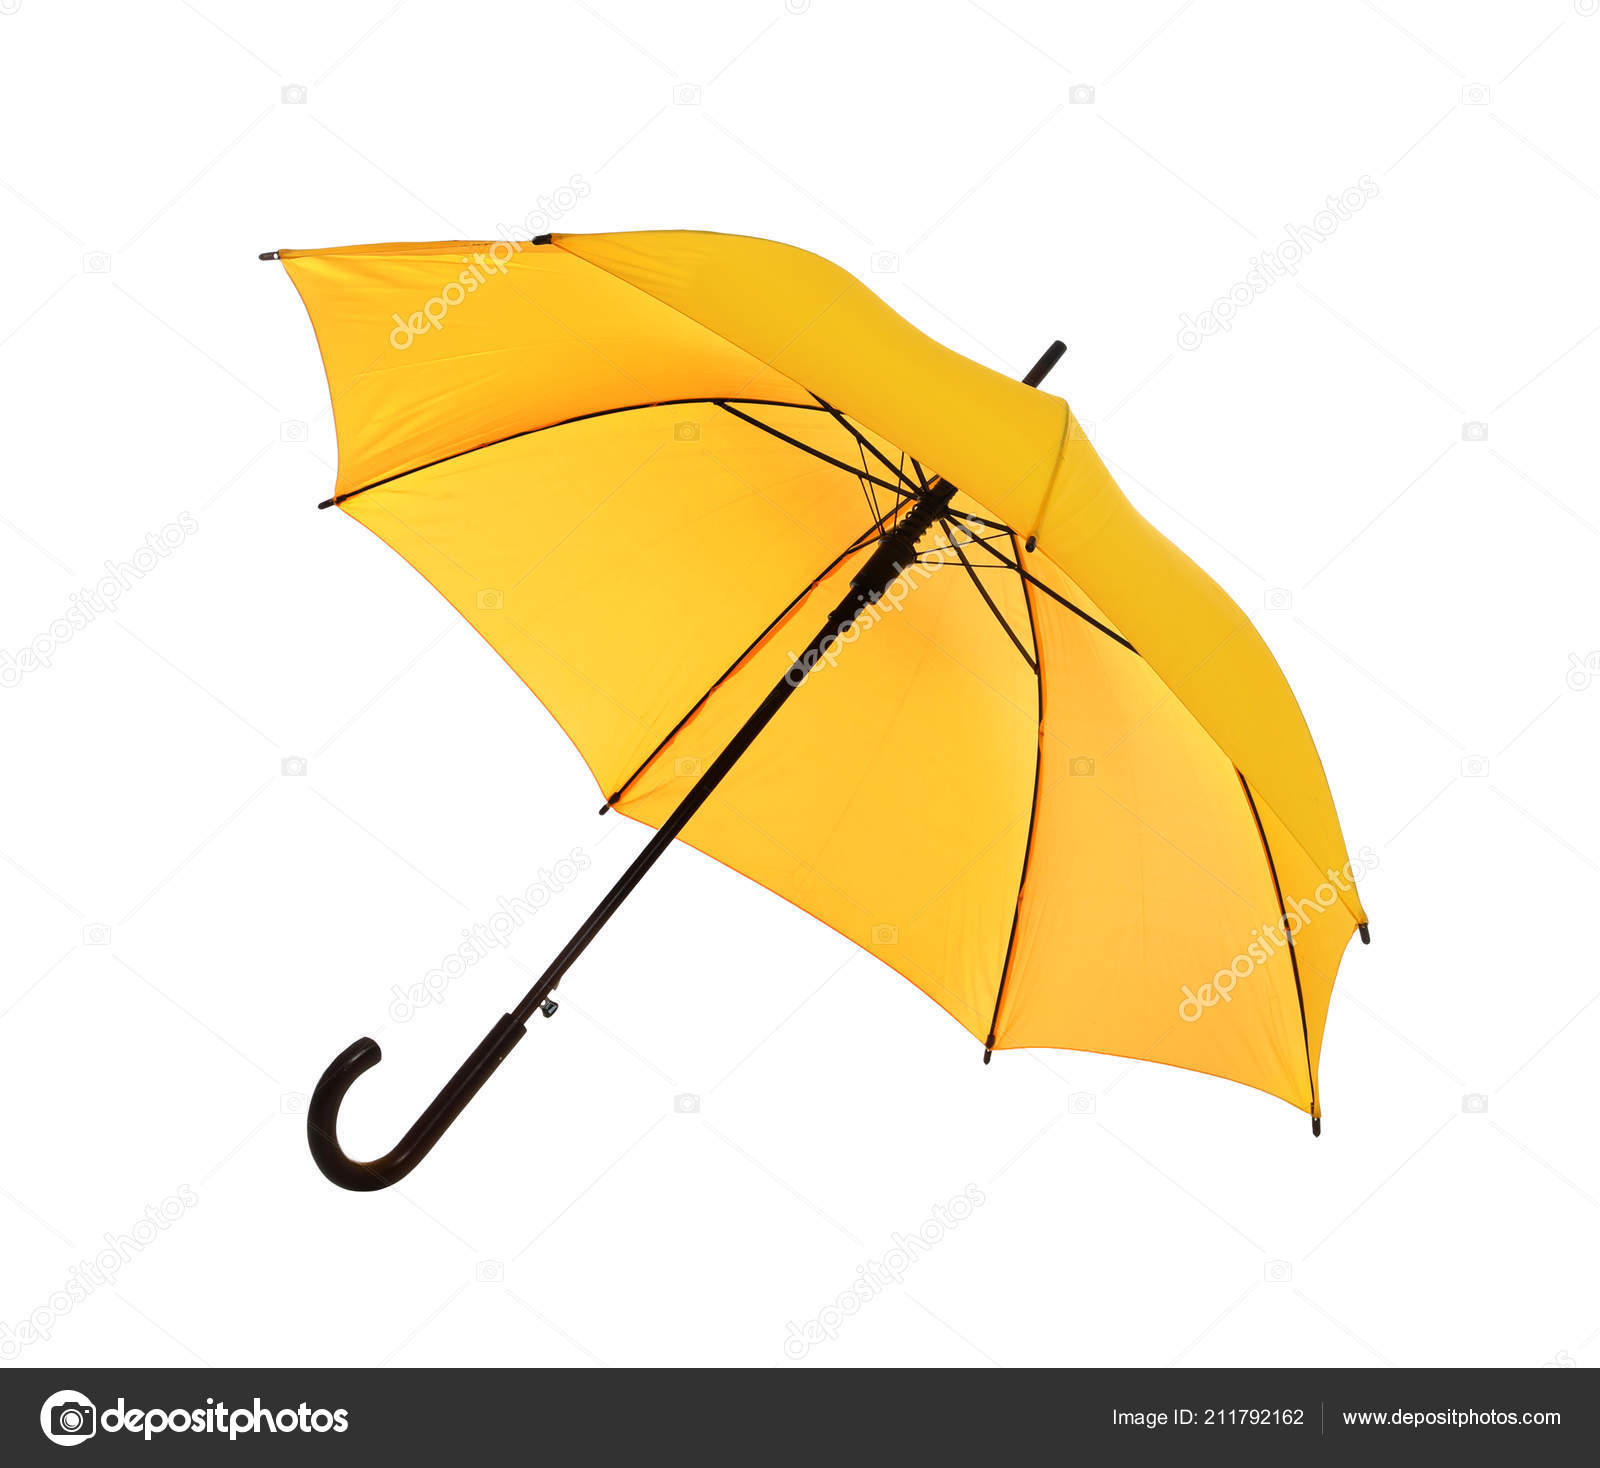 Cây dù hiện đại trên nền trắng mang lại sự tinh tế và đẳng cấp. Hãy xem qua hình ảnh này để cập nhật xu hướng mới nhất về kiểu dáng cây dù.